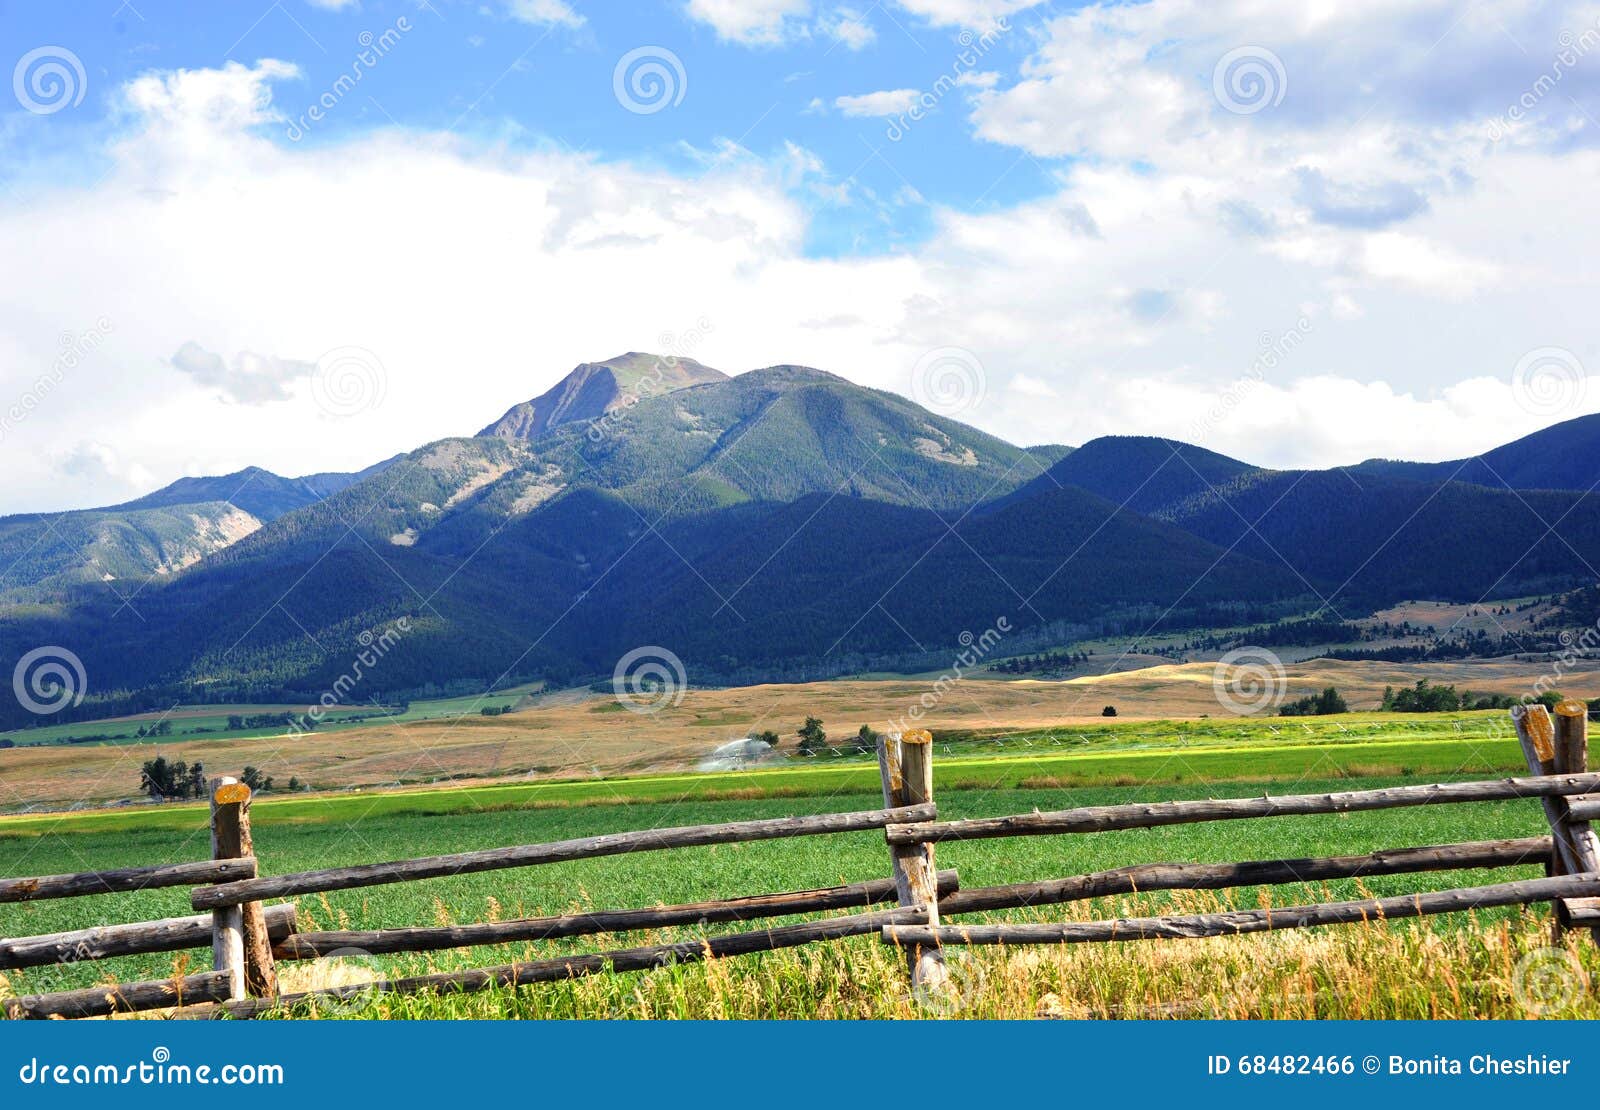 absaroka mountains loom over farm